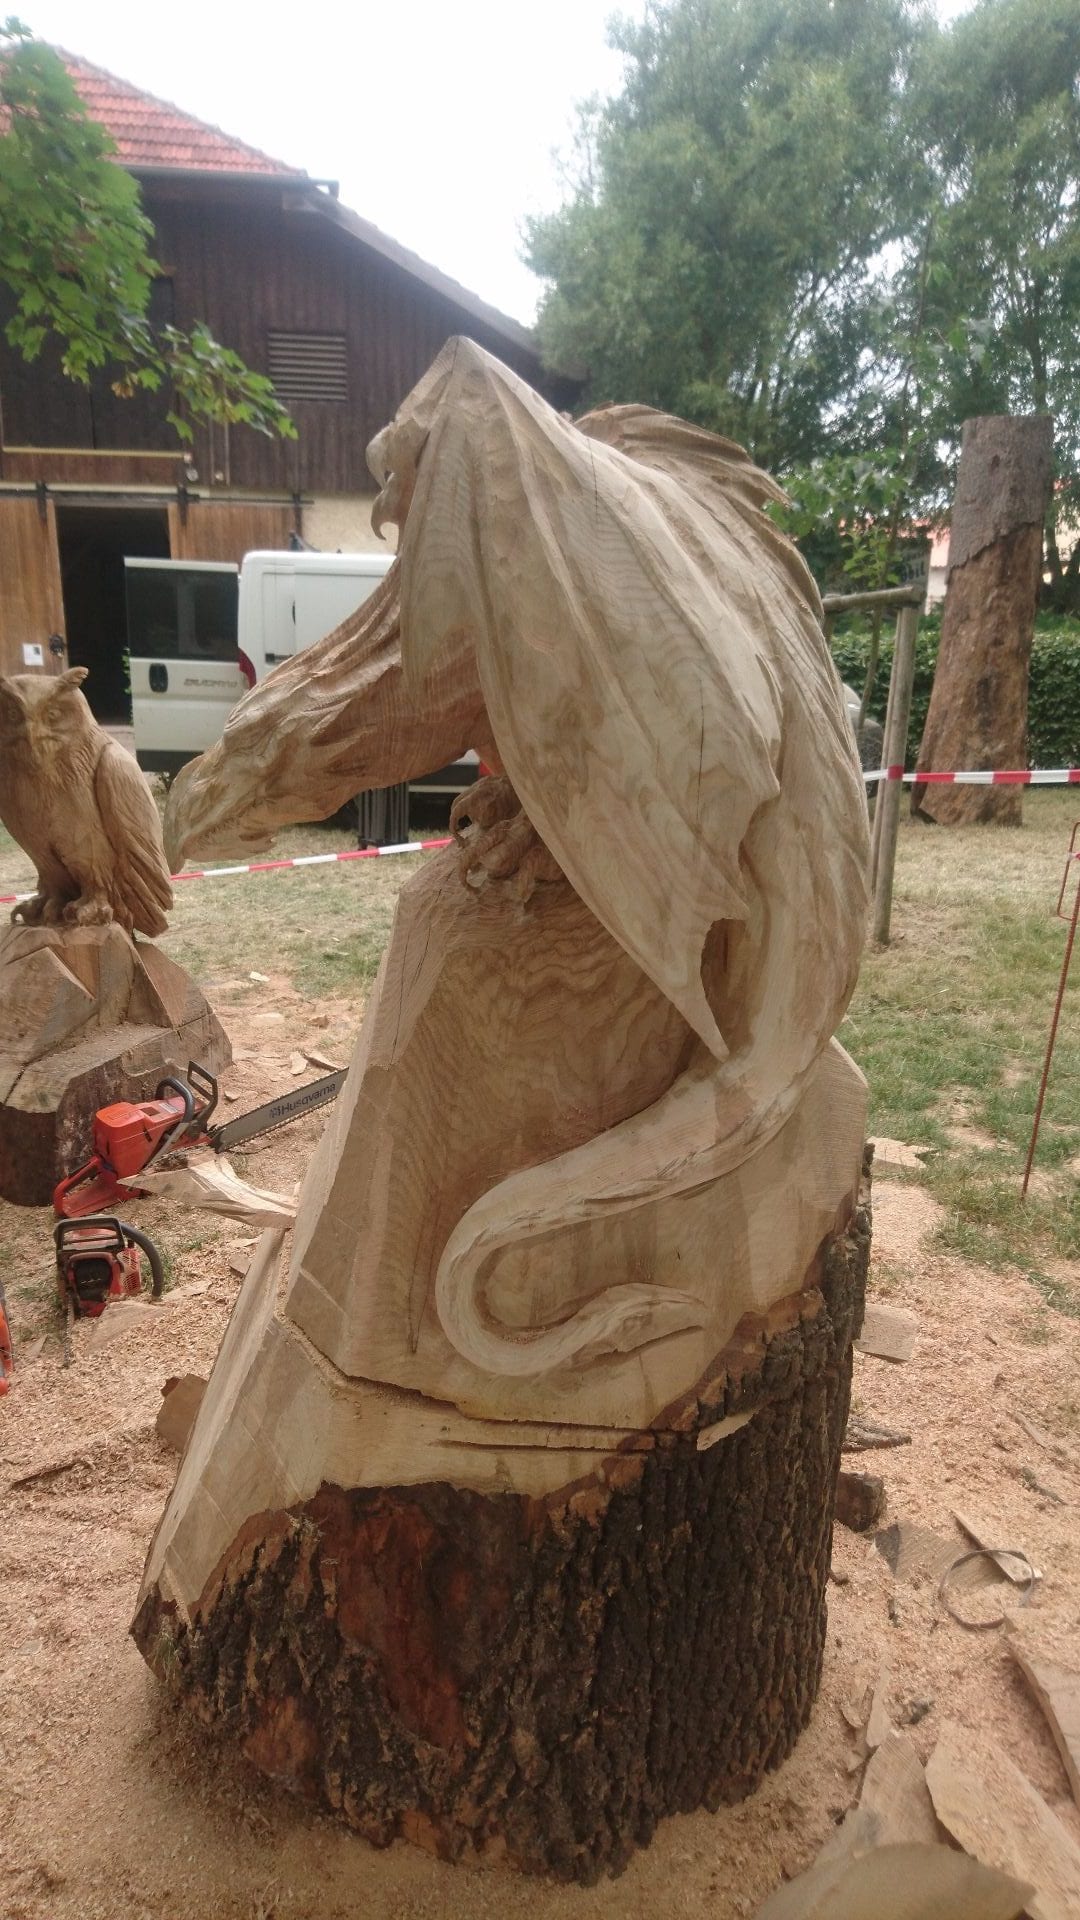 Geschnitzte Figur aus Eichenholz | Ein Drache sitzend auf einer Platform.